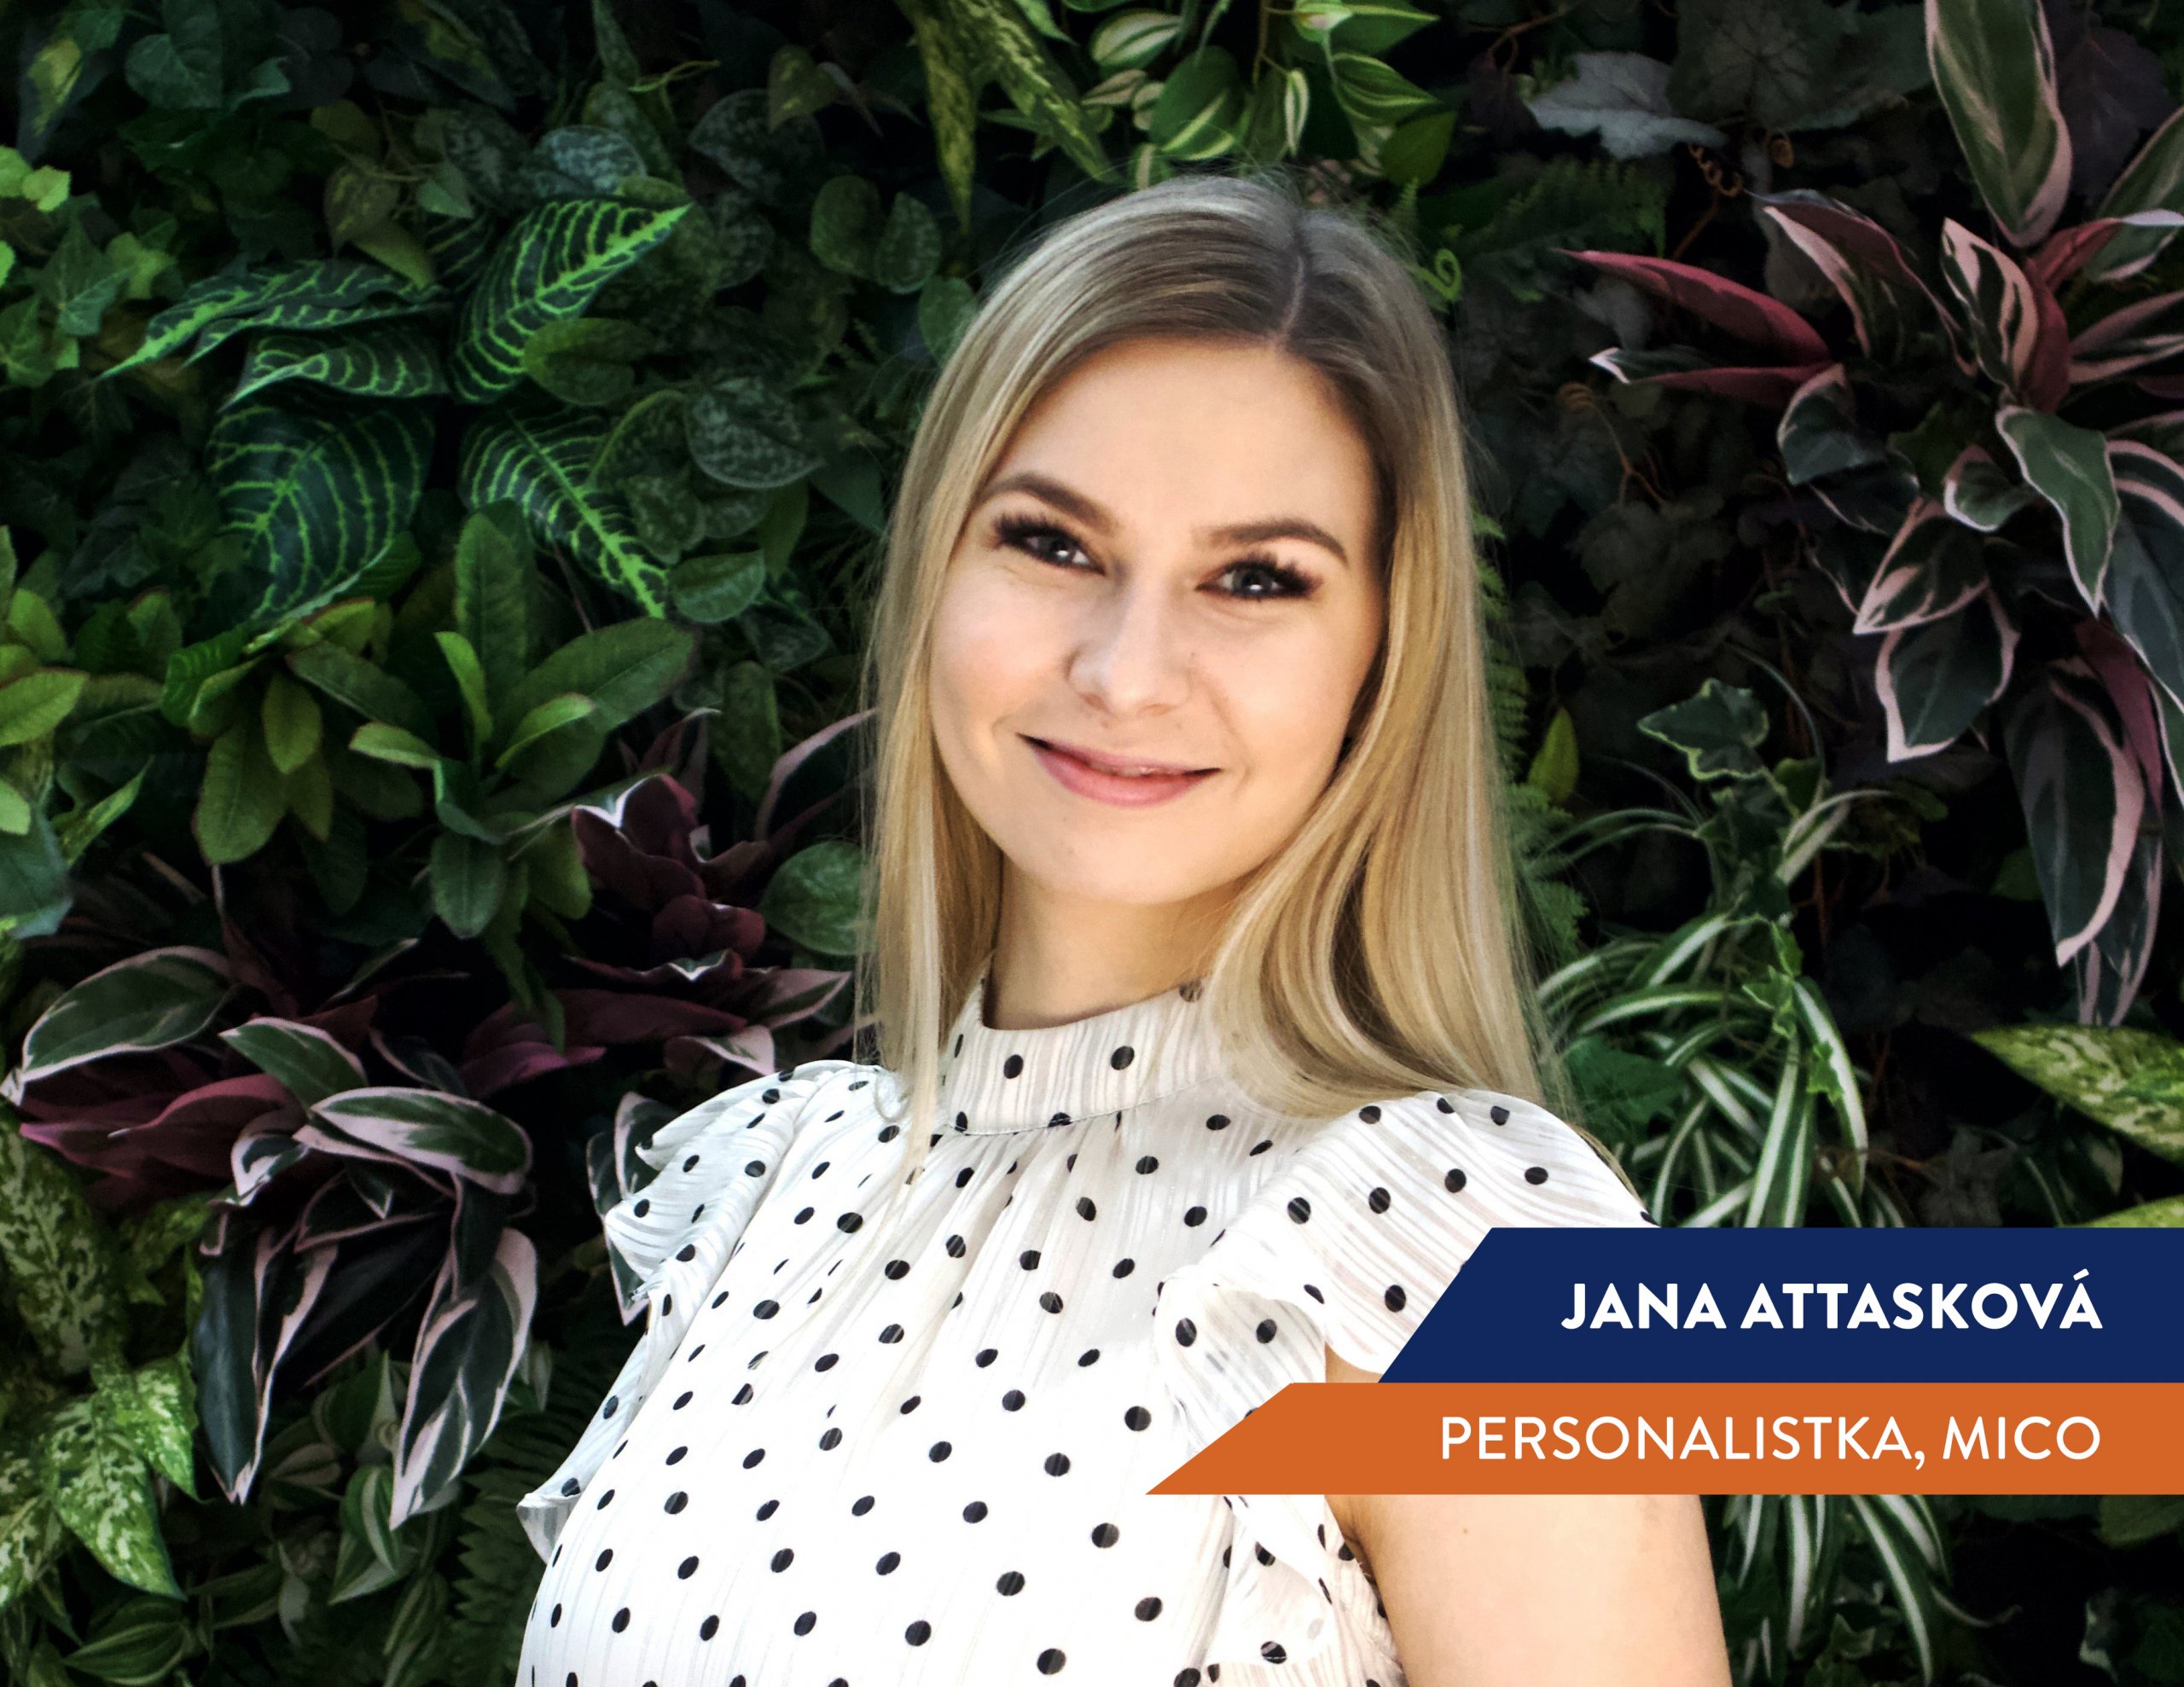 HR Talent Programme: Jana Attasková